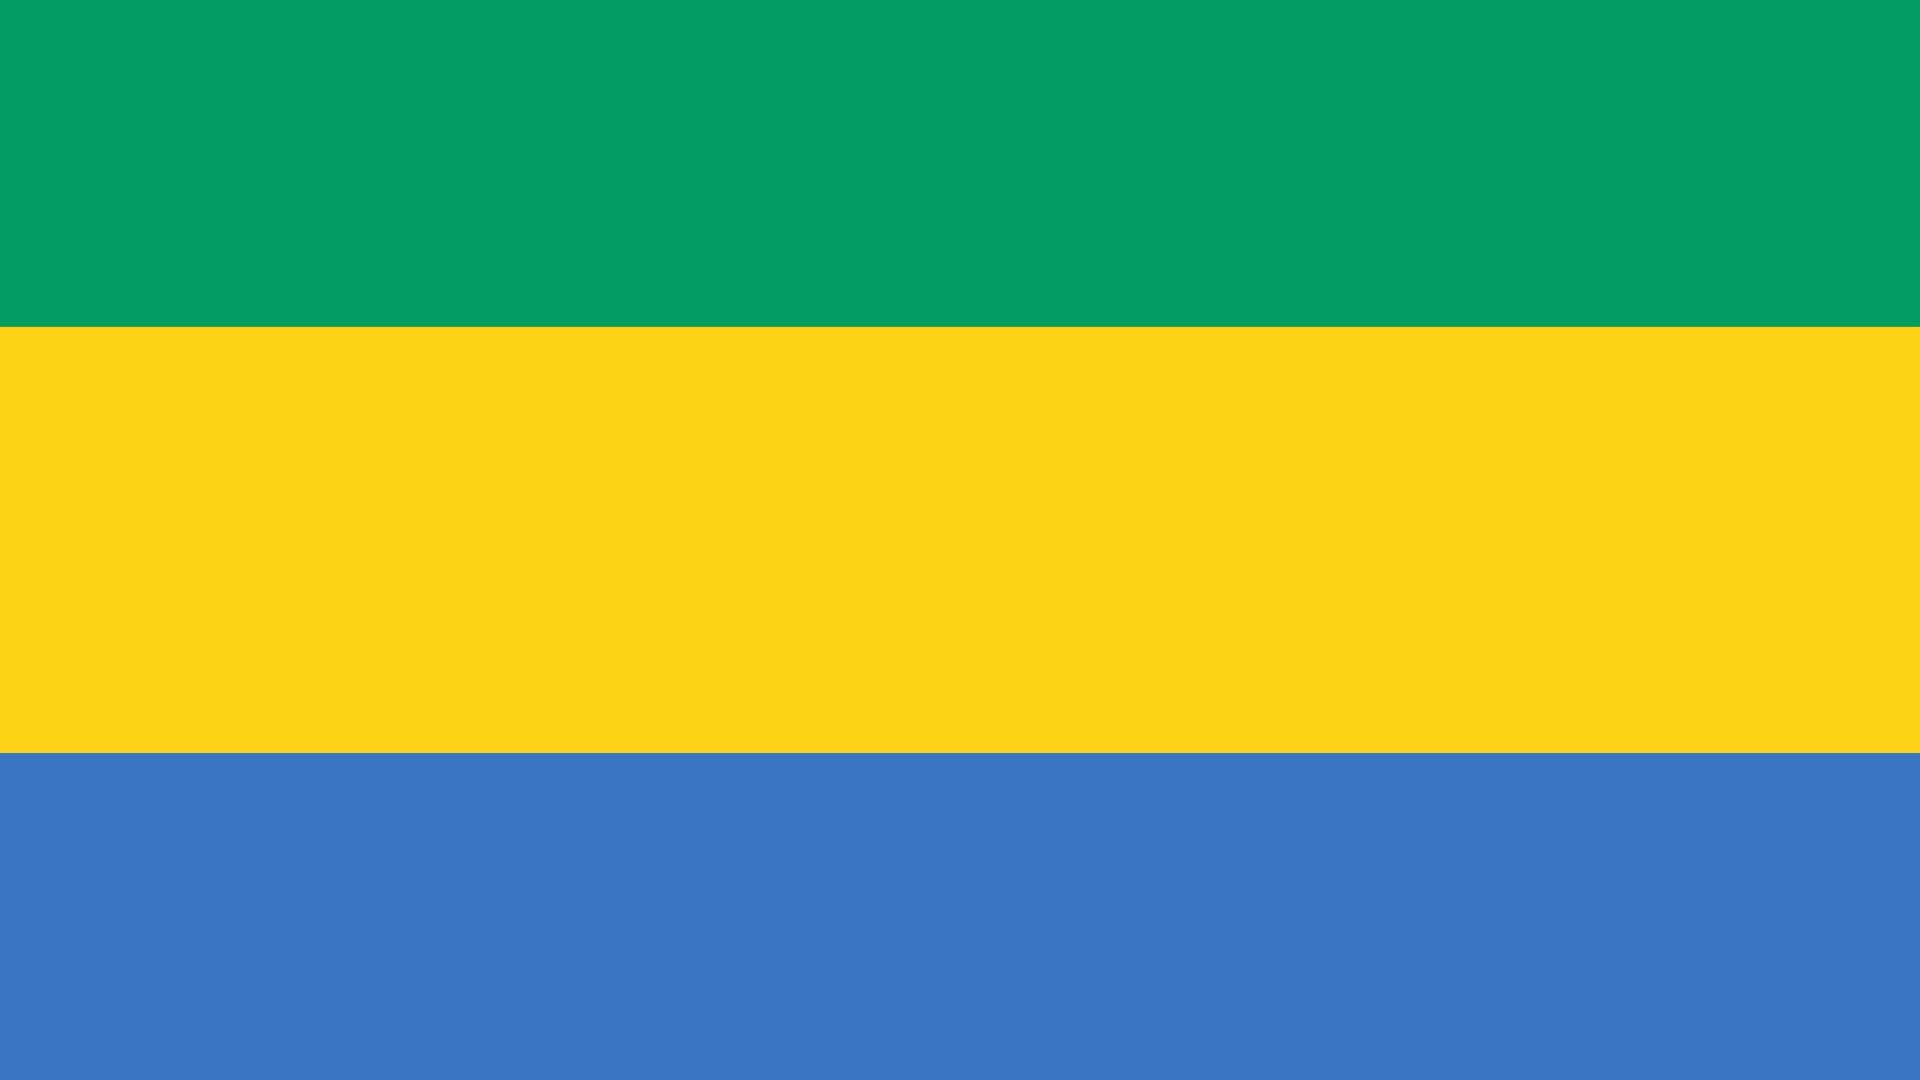 A bandeira é composta por três faixas horizontais simbolizando a floresta equatorial (verde), o sol (amarelo) e o mar (azul). Esta bandeira possui todas as cores da bandeira do Brasil, menos o branco.